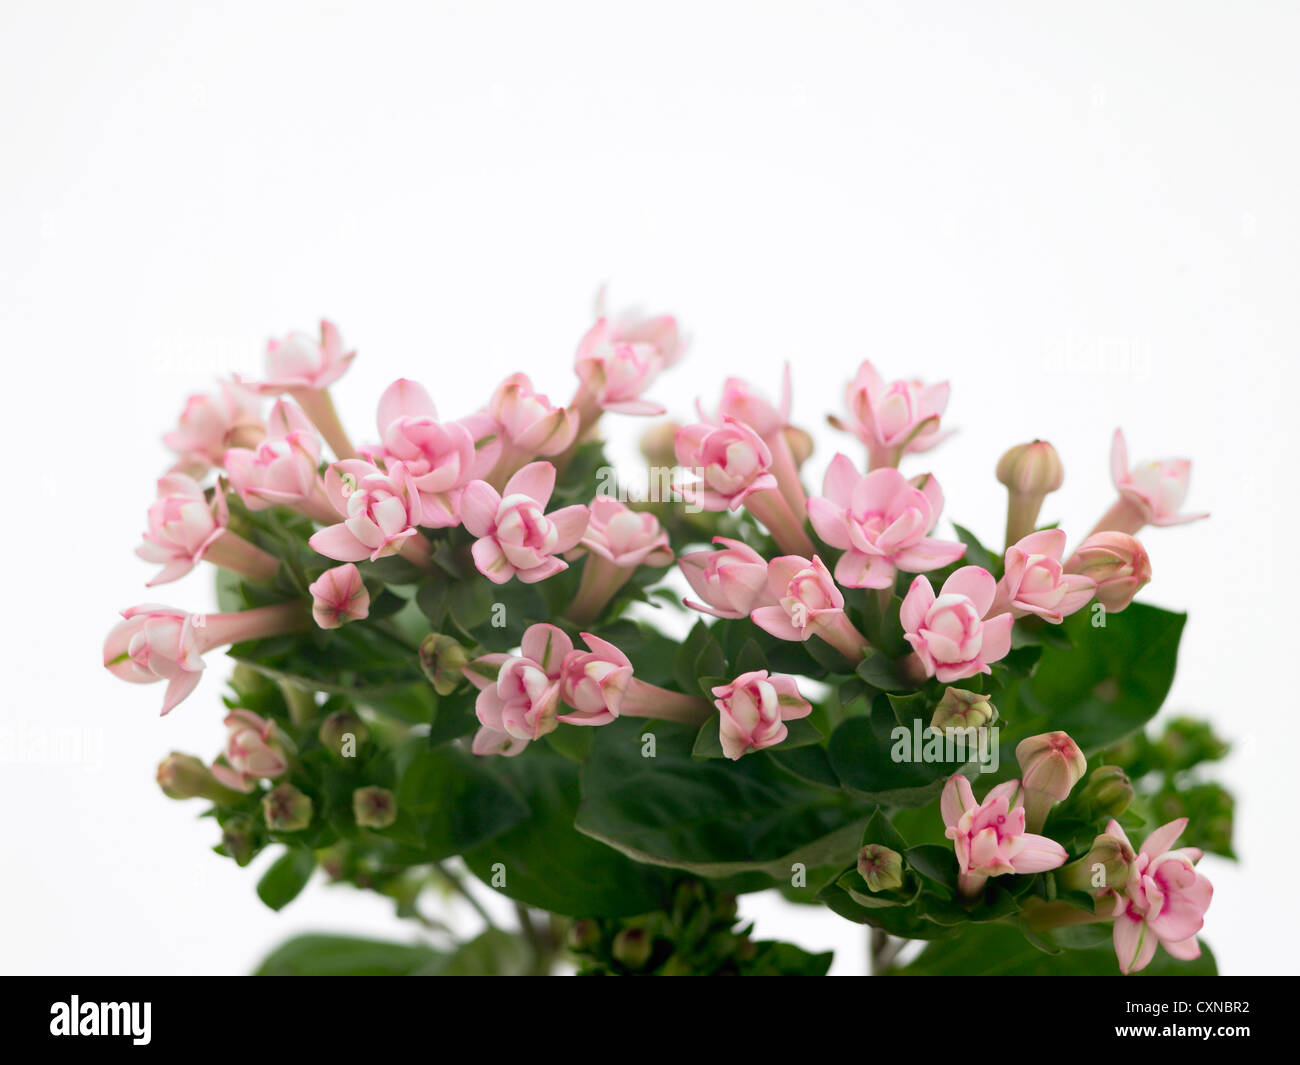 Bouvardia longiflora ‘Diamond Pink’ common name Bouvardia Stock Photo